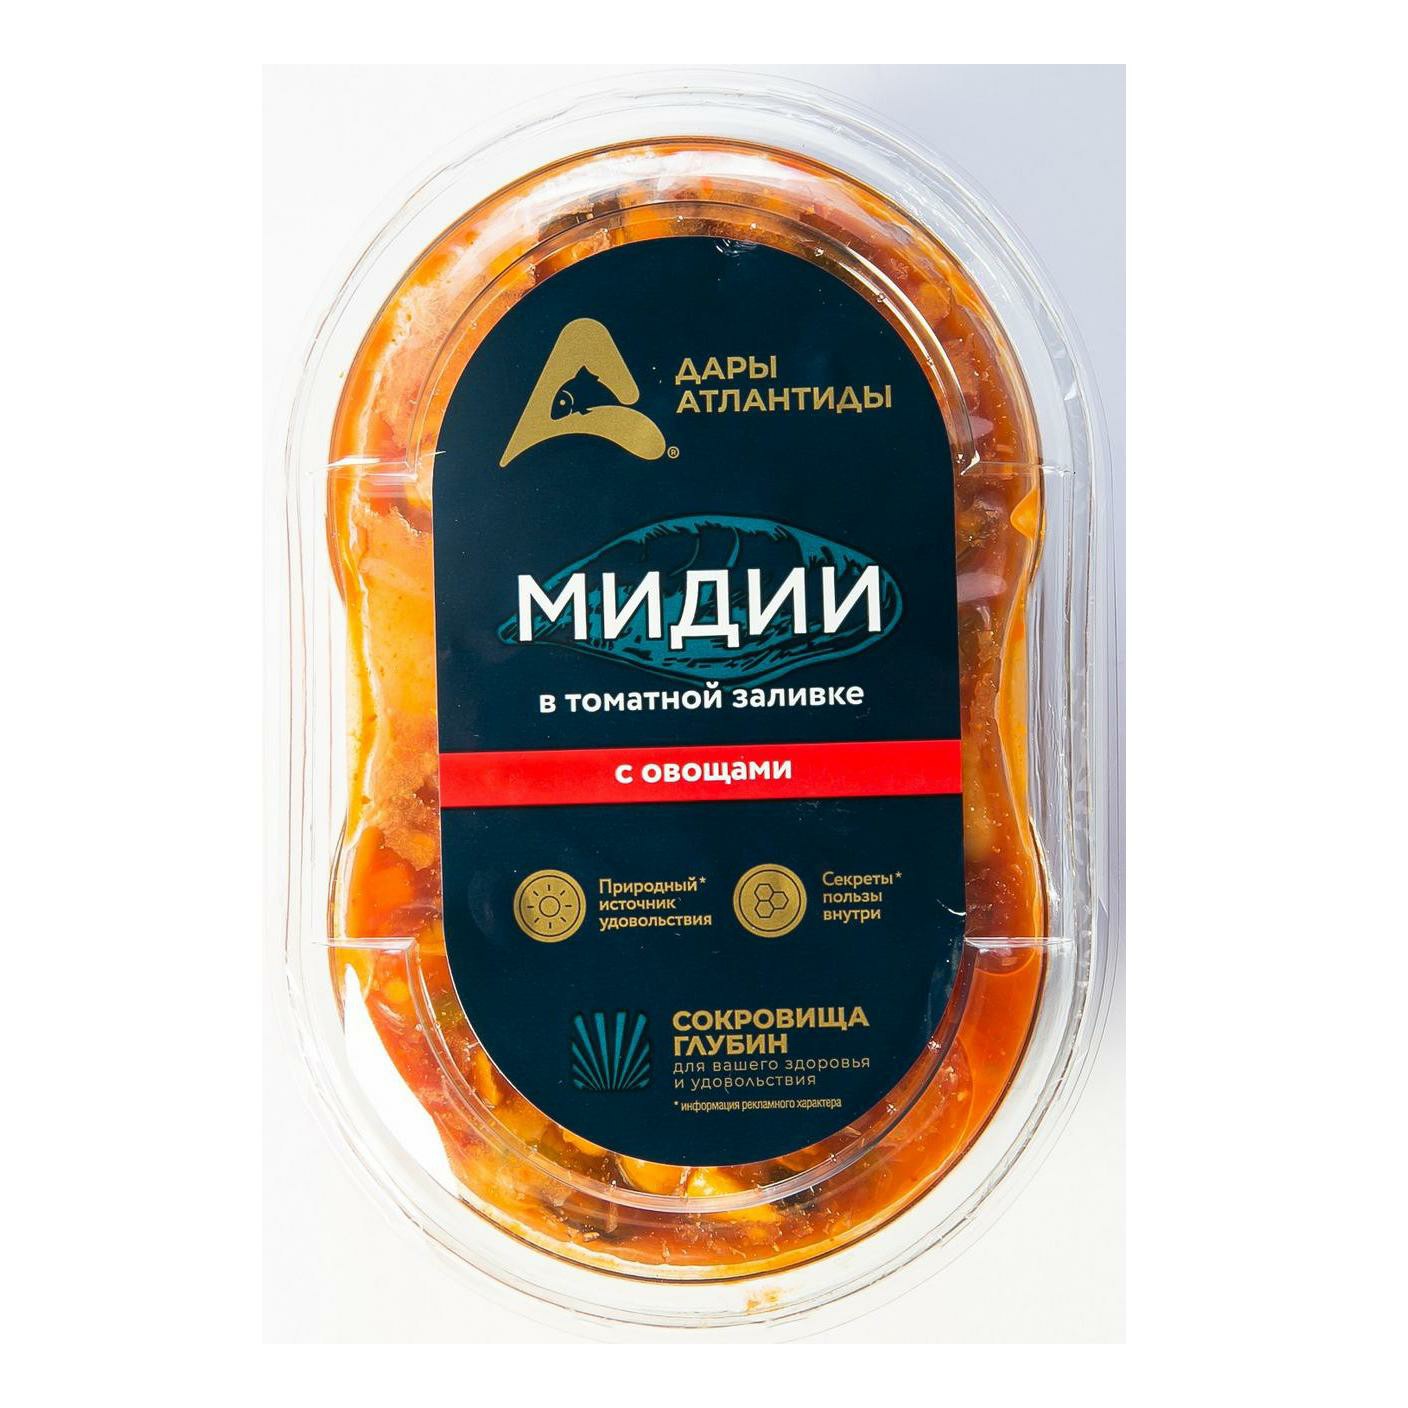 Мидии Дары Аилантиды вареные маринованные в томатной заливке с овощами 220 г